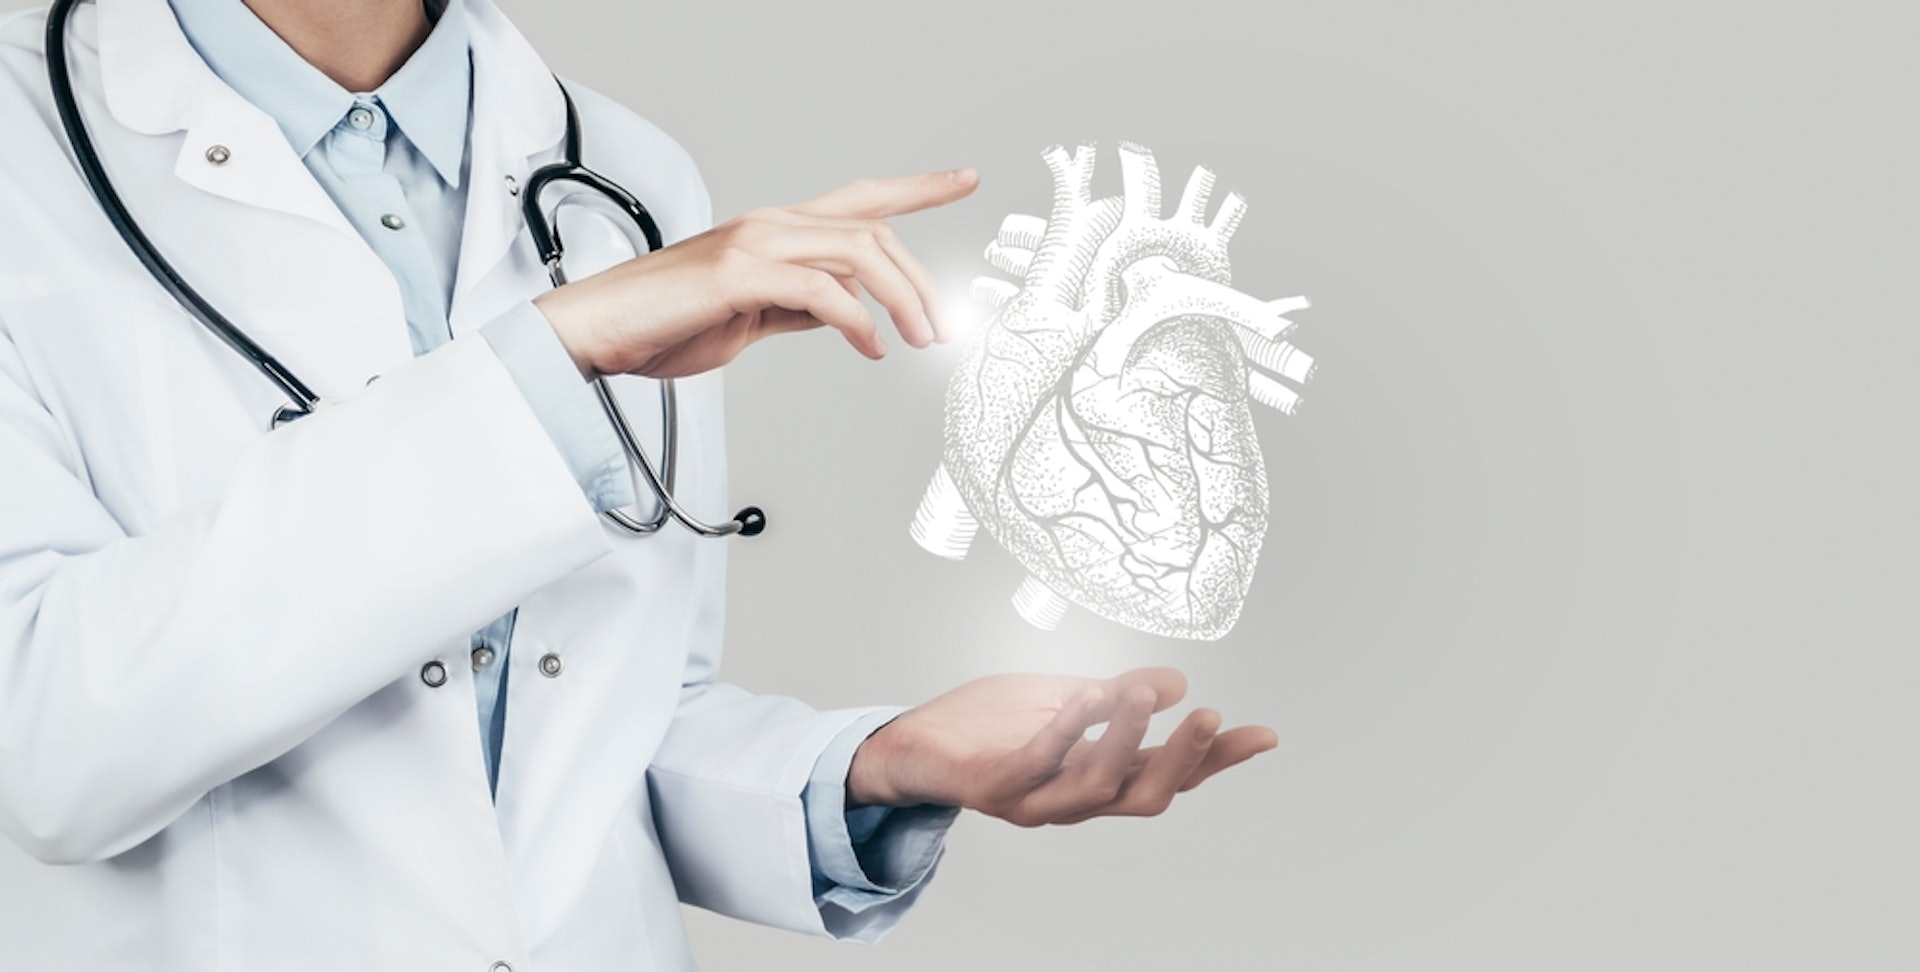 心肌梗塞是一種急性的心臟病，而心臟的問題嚴重可危及生命